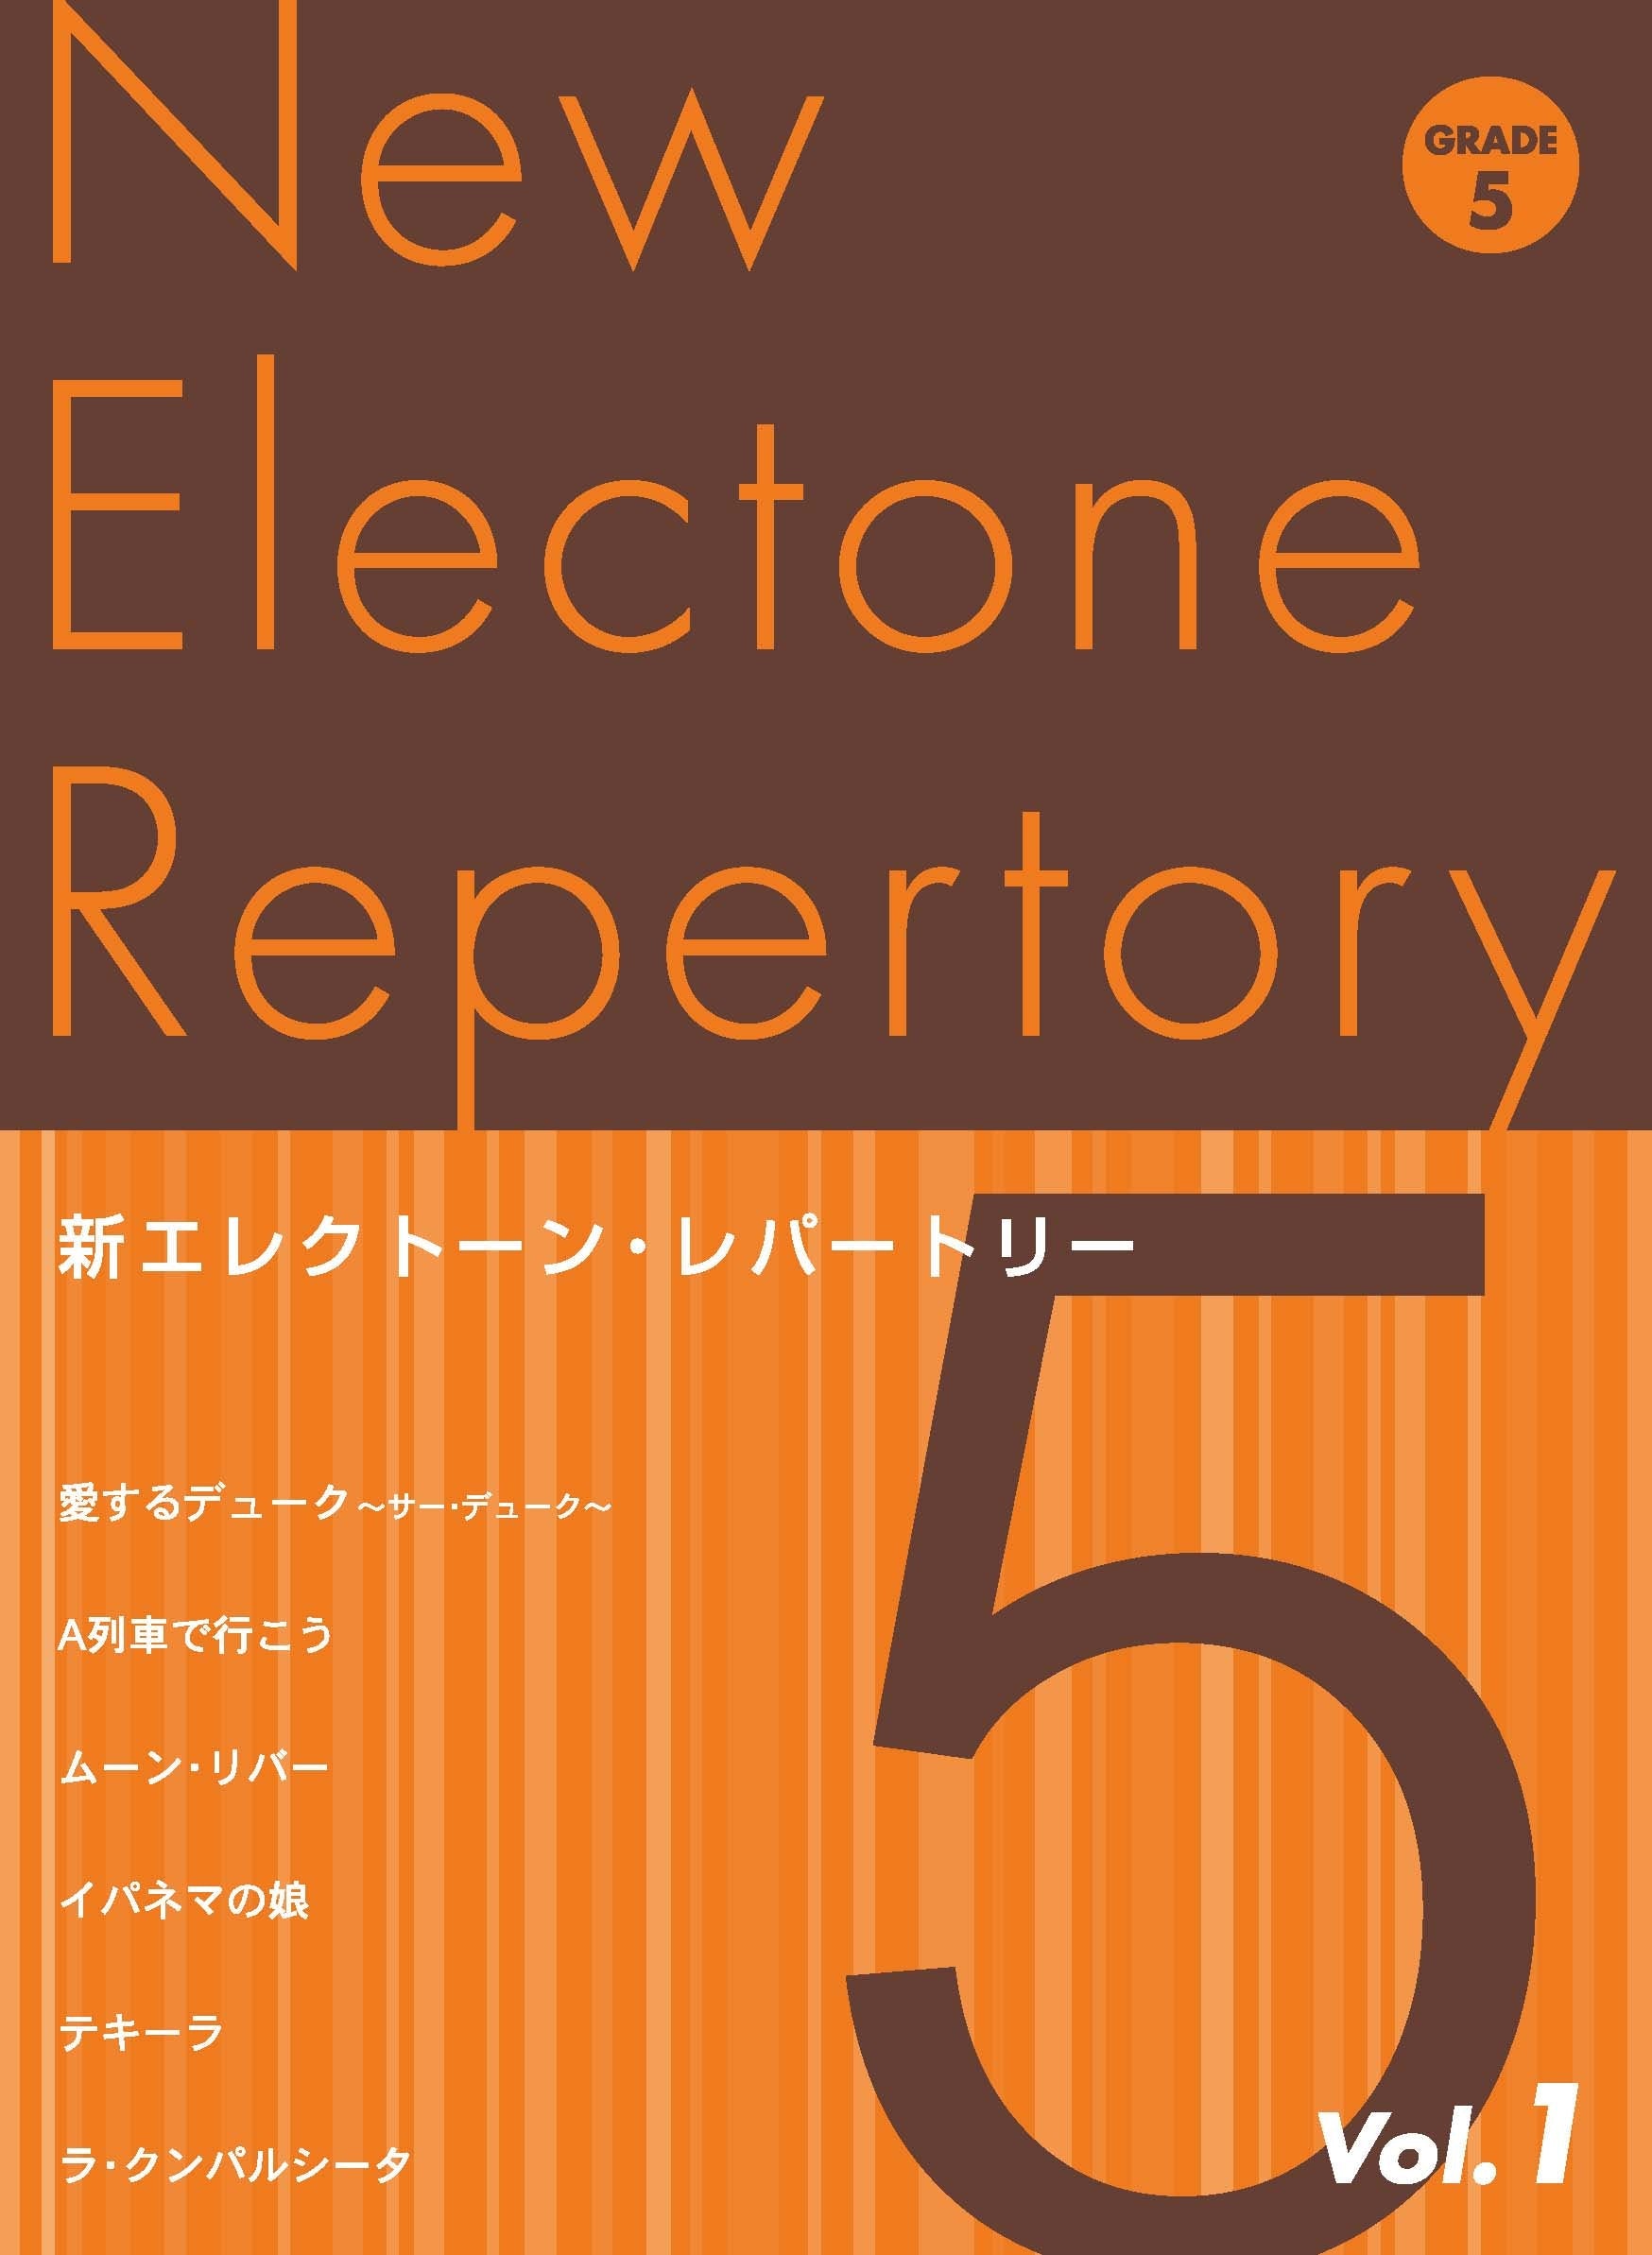 新エレクトーン・レパートリー グレード5級Vol.1 | ヤマハの楽譜通販